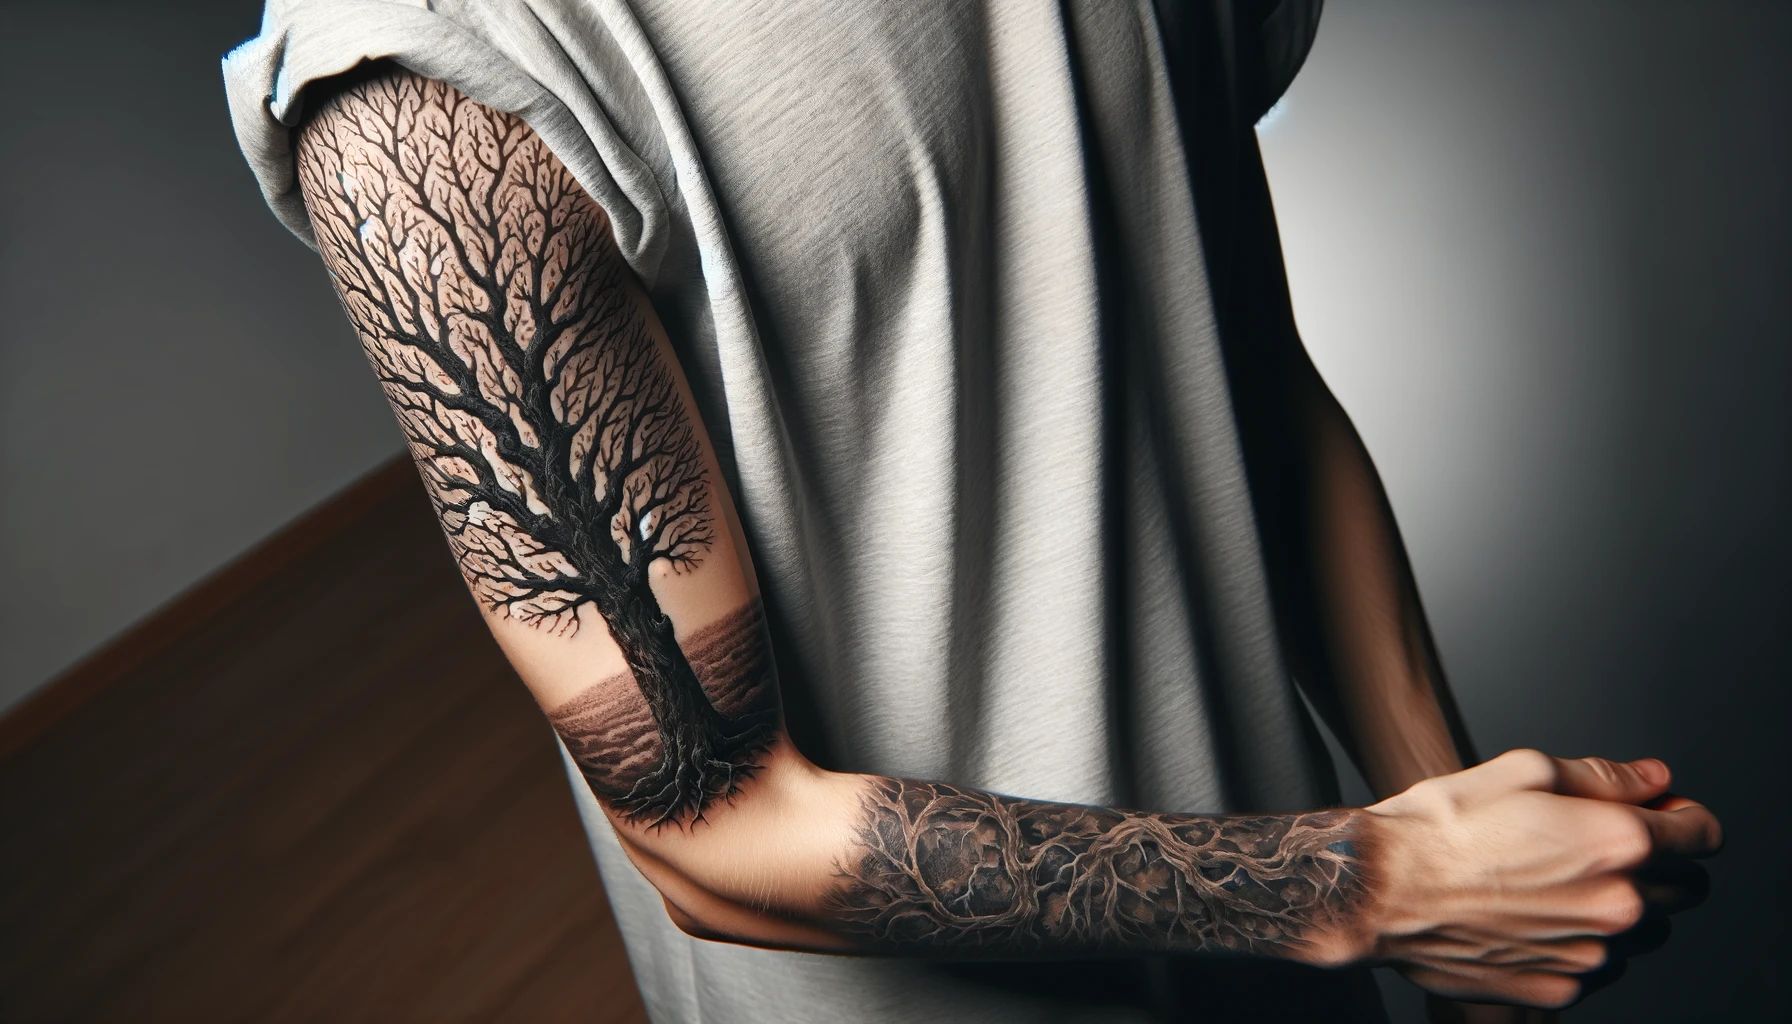 Tatuaż przedstawiający drzewo w stylu graficznym rozciąga się od ramienia do przedramienia osoby, prezentując bogaty detal korony i korzeni